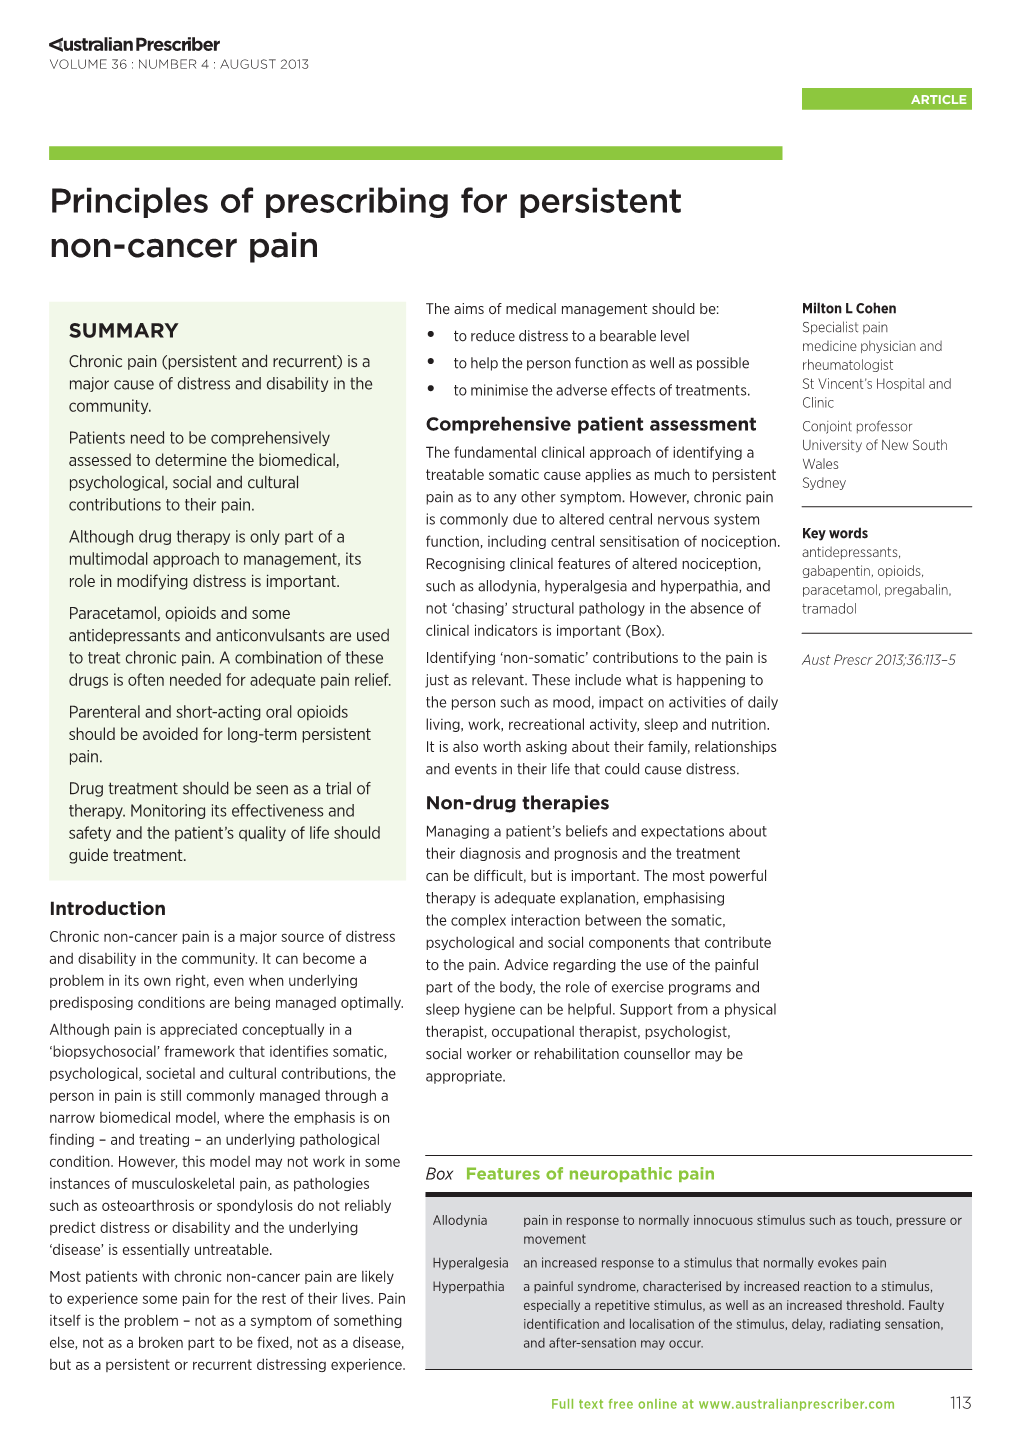 Principles of Prescribing for Persistent Non-Cancer Pain